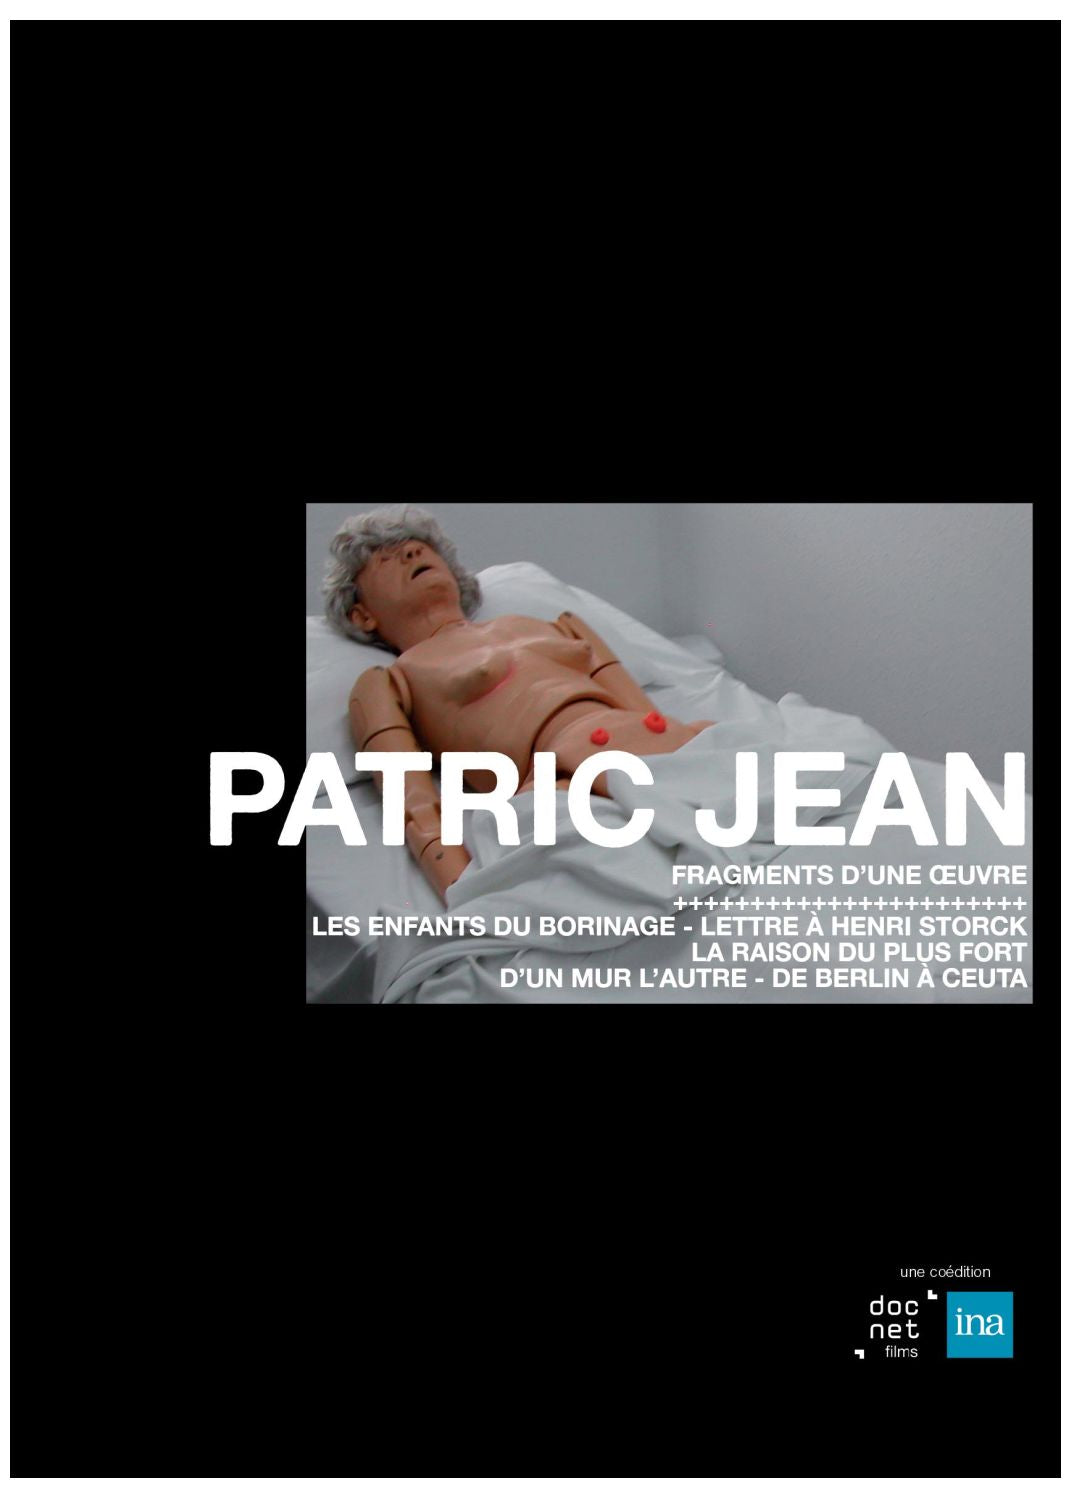 Coffret Patric Jean [DVD]3530941033142